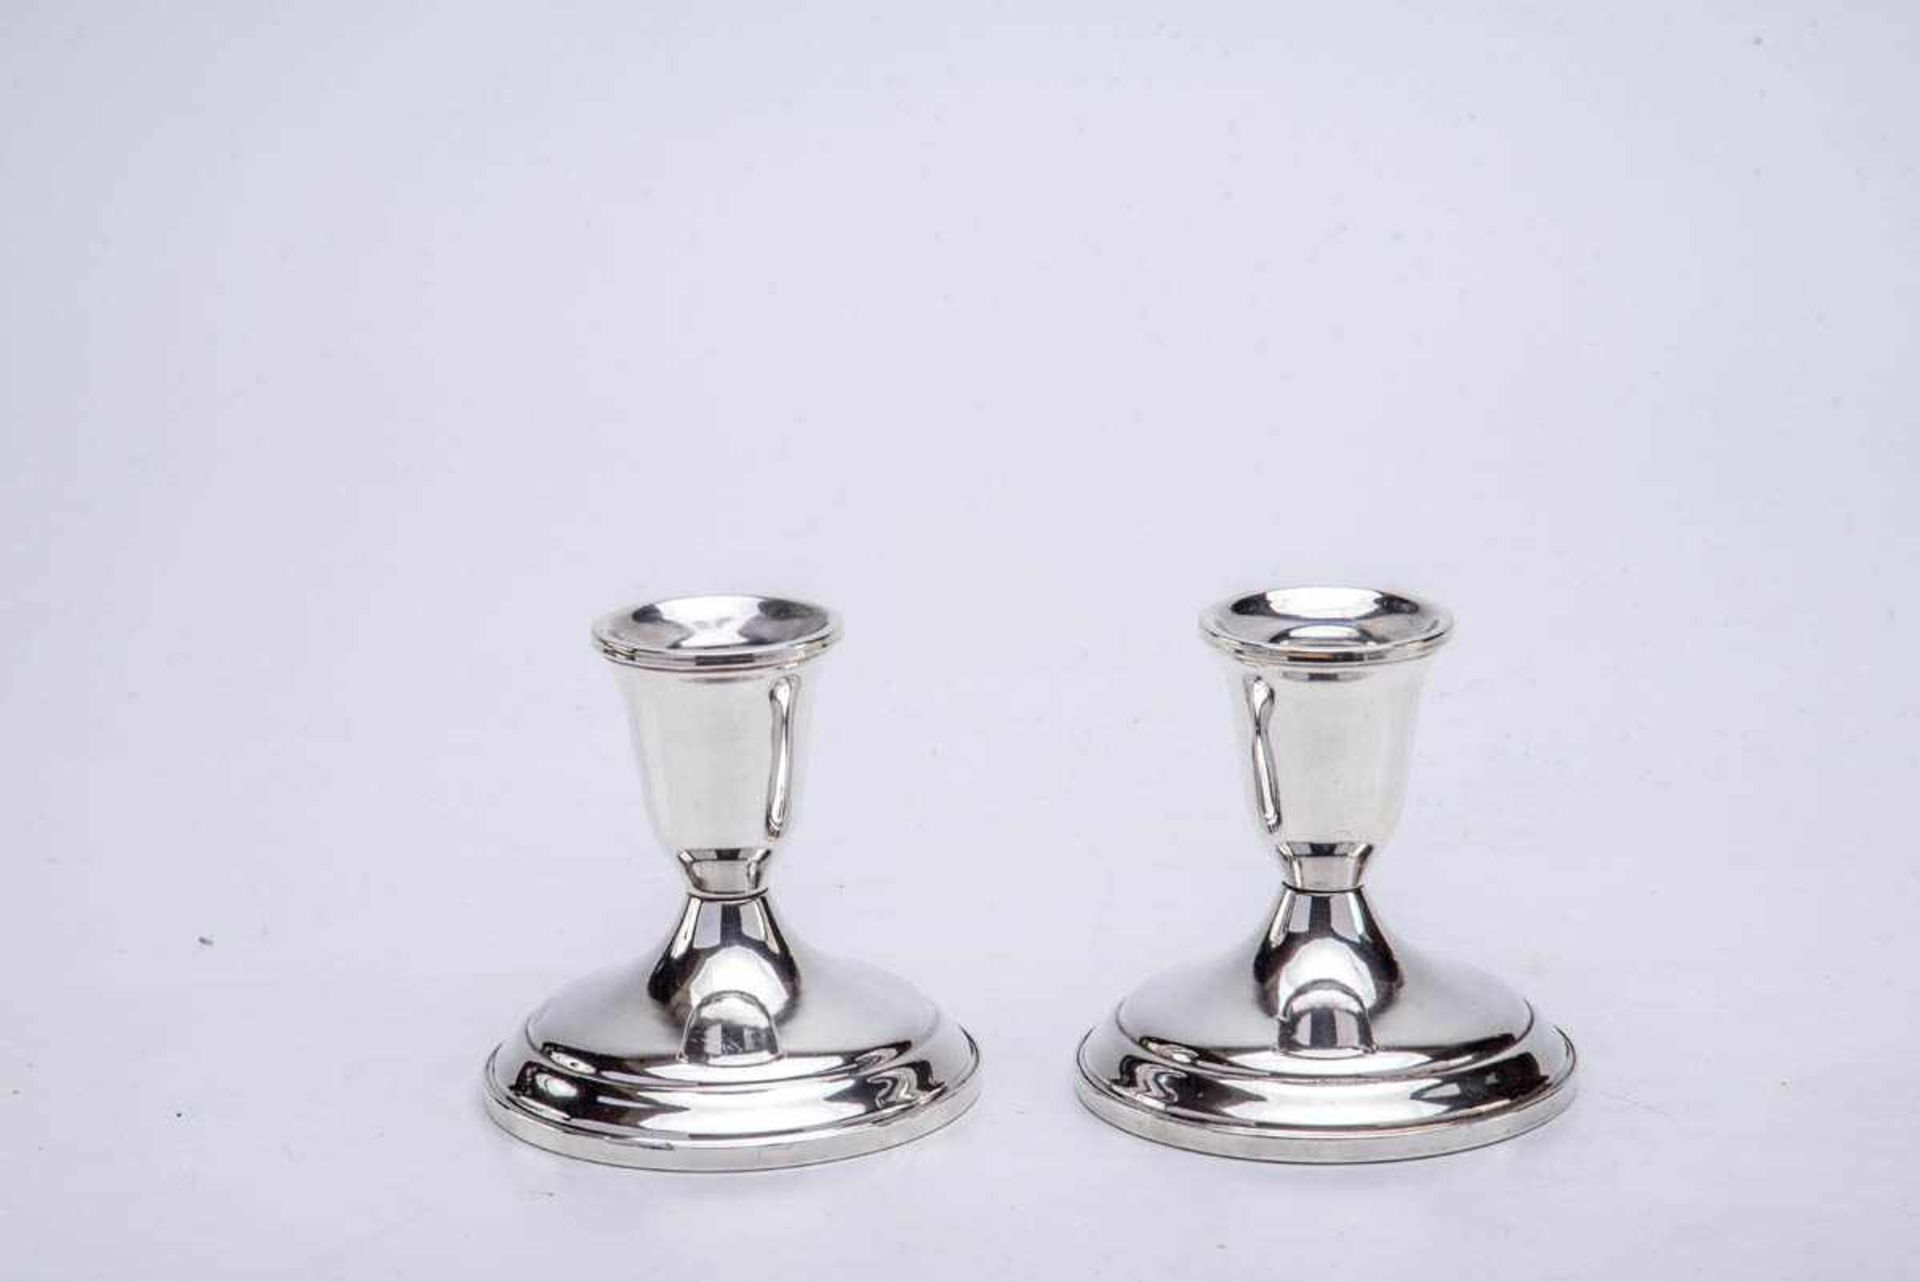 Paar Kerzenleuchter, Towle, USA Sterling-Silber, Runder leicht gewölbter Fuß, schlichte Kerzentülle. - Bild 2 aus 3